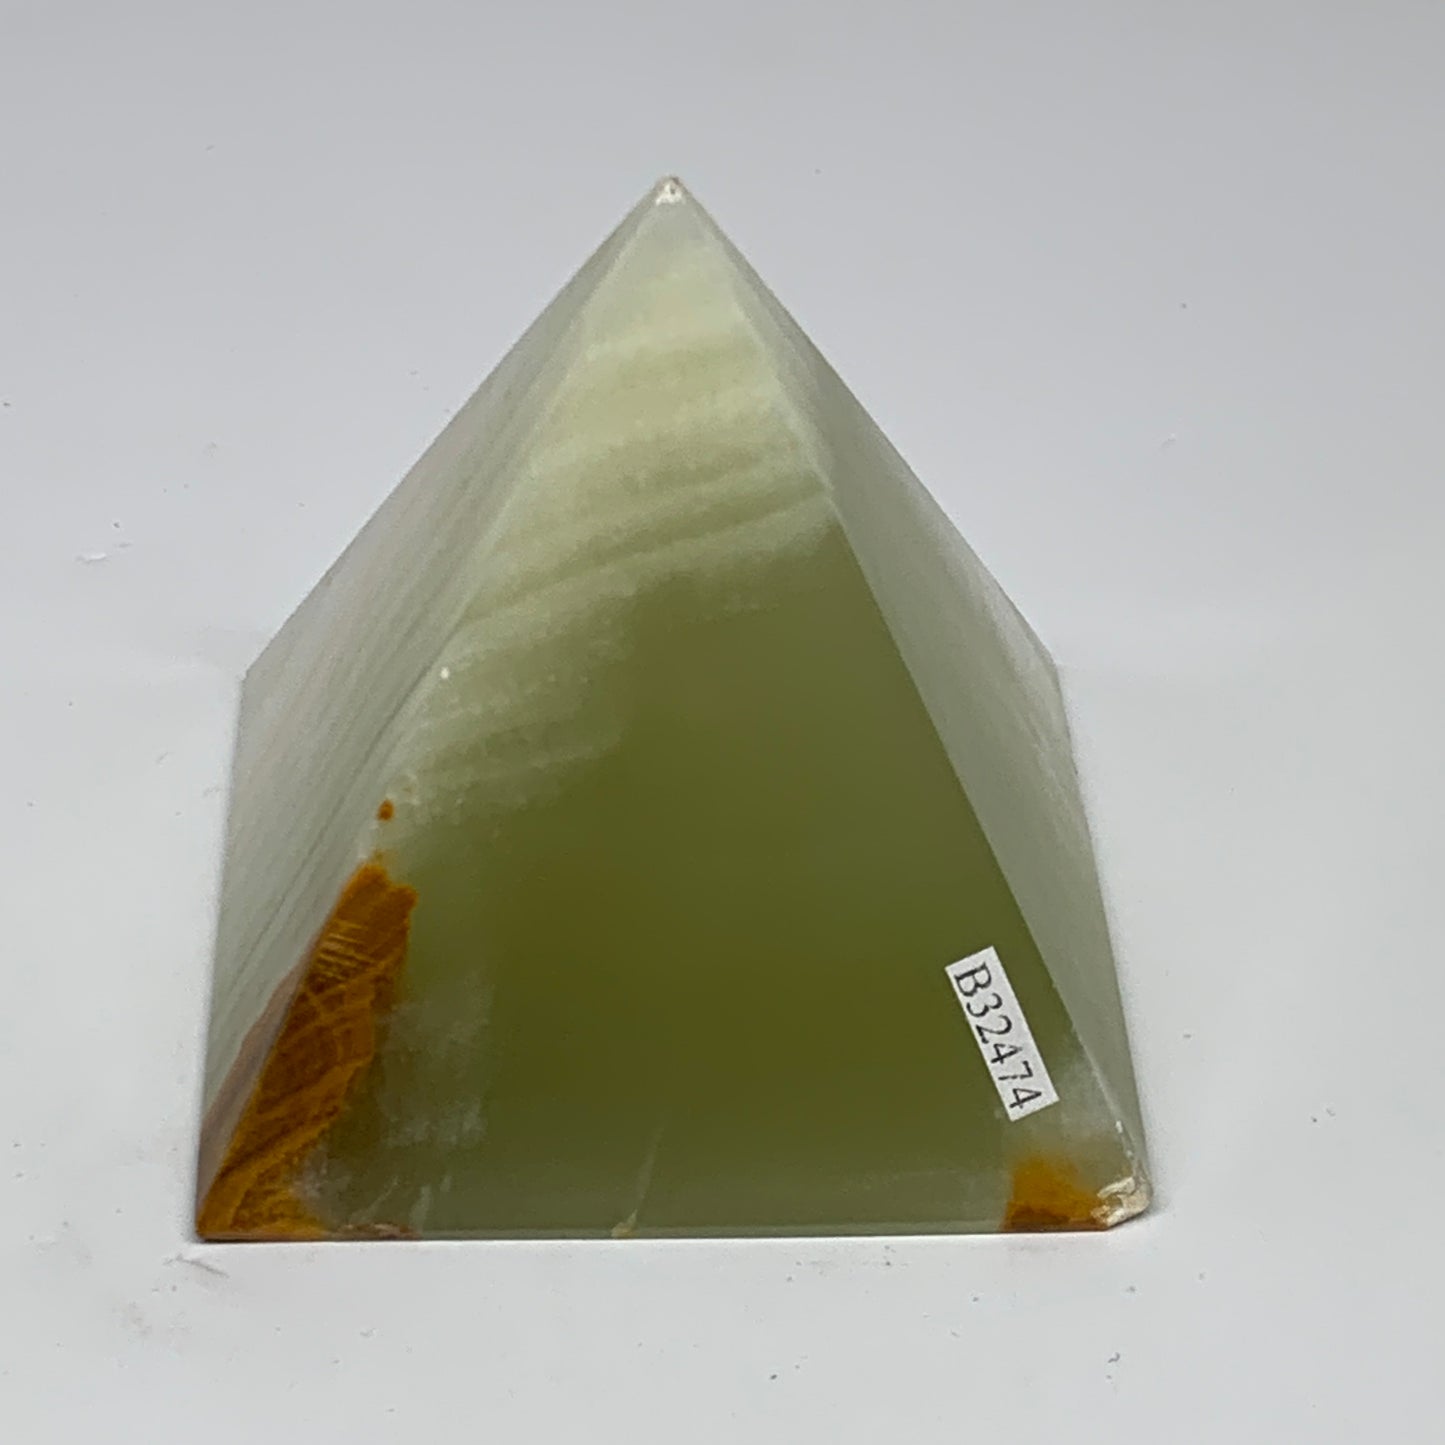 0.87 lbs, 2.8"x2.9"x2.9", Green Onyx Pyramid Gemstone Crystal, B32474